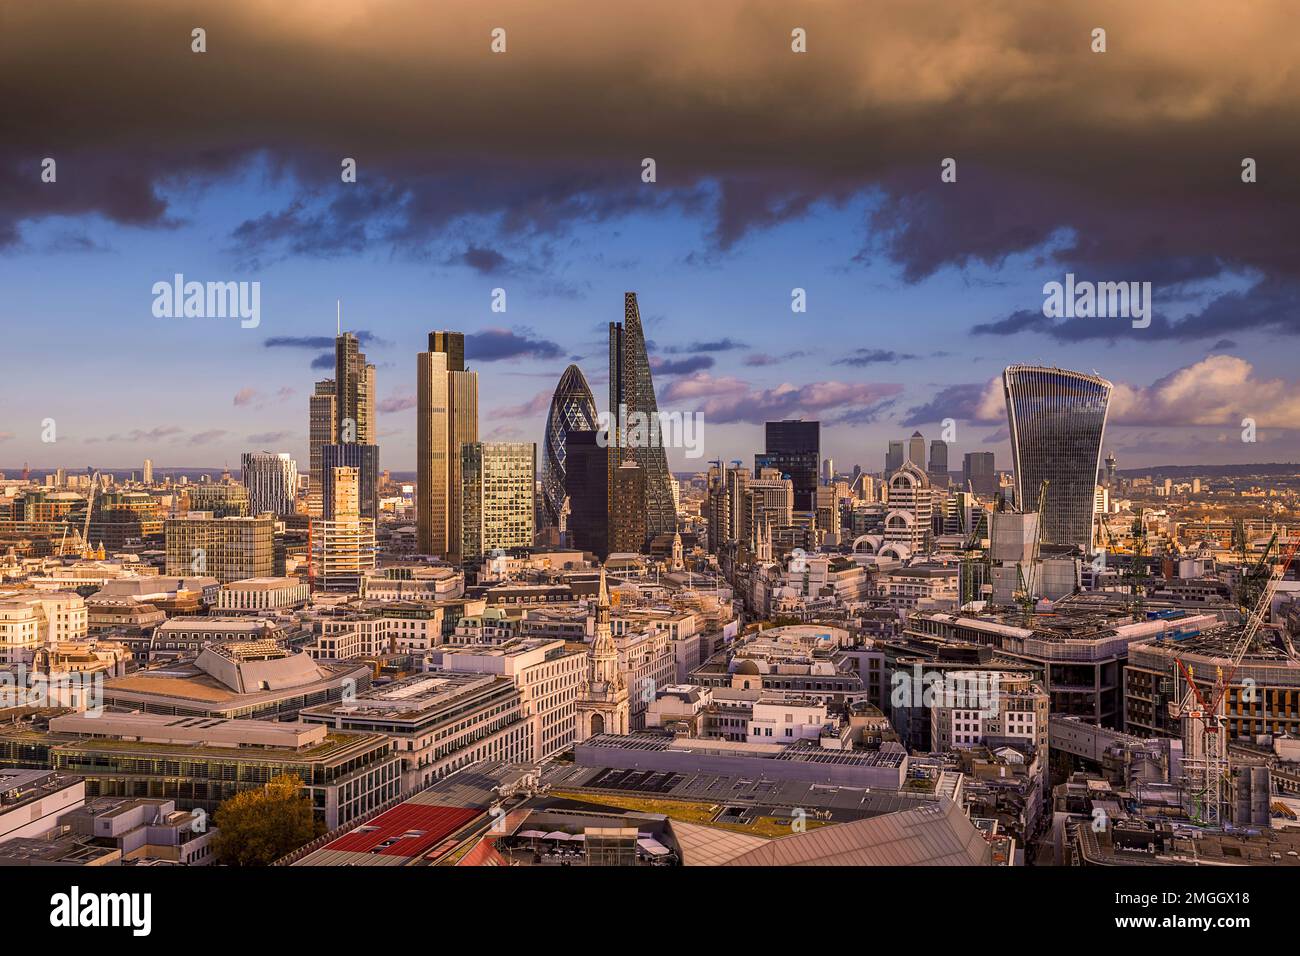 Londres, Royaume-Uni - la tempête d'or survolez Bank, le célèbre quartier des affaires de Londres au coucher du soleil avec des gratte-ciels. Vue panoramique de Londres Banque D'Images